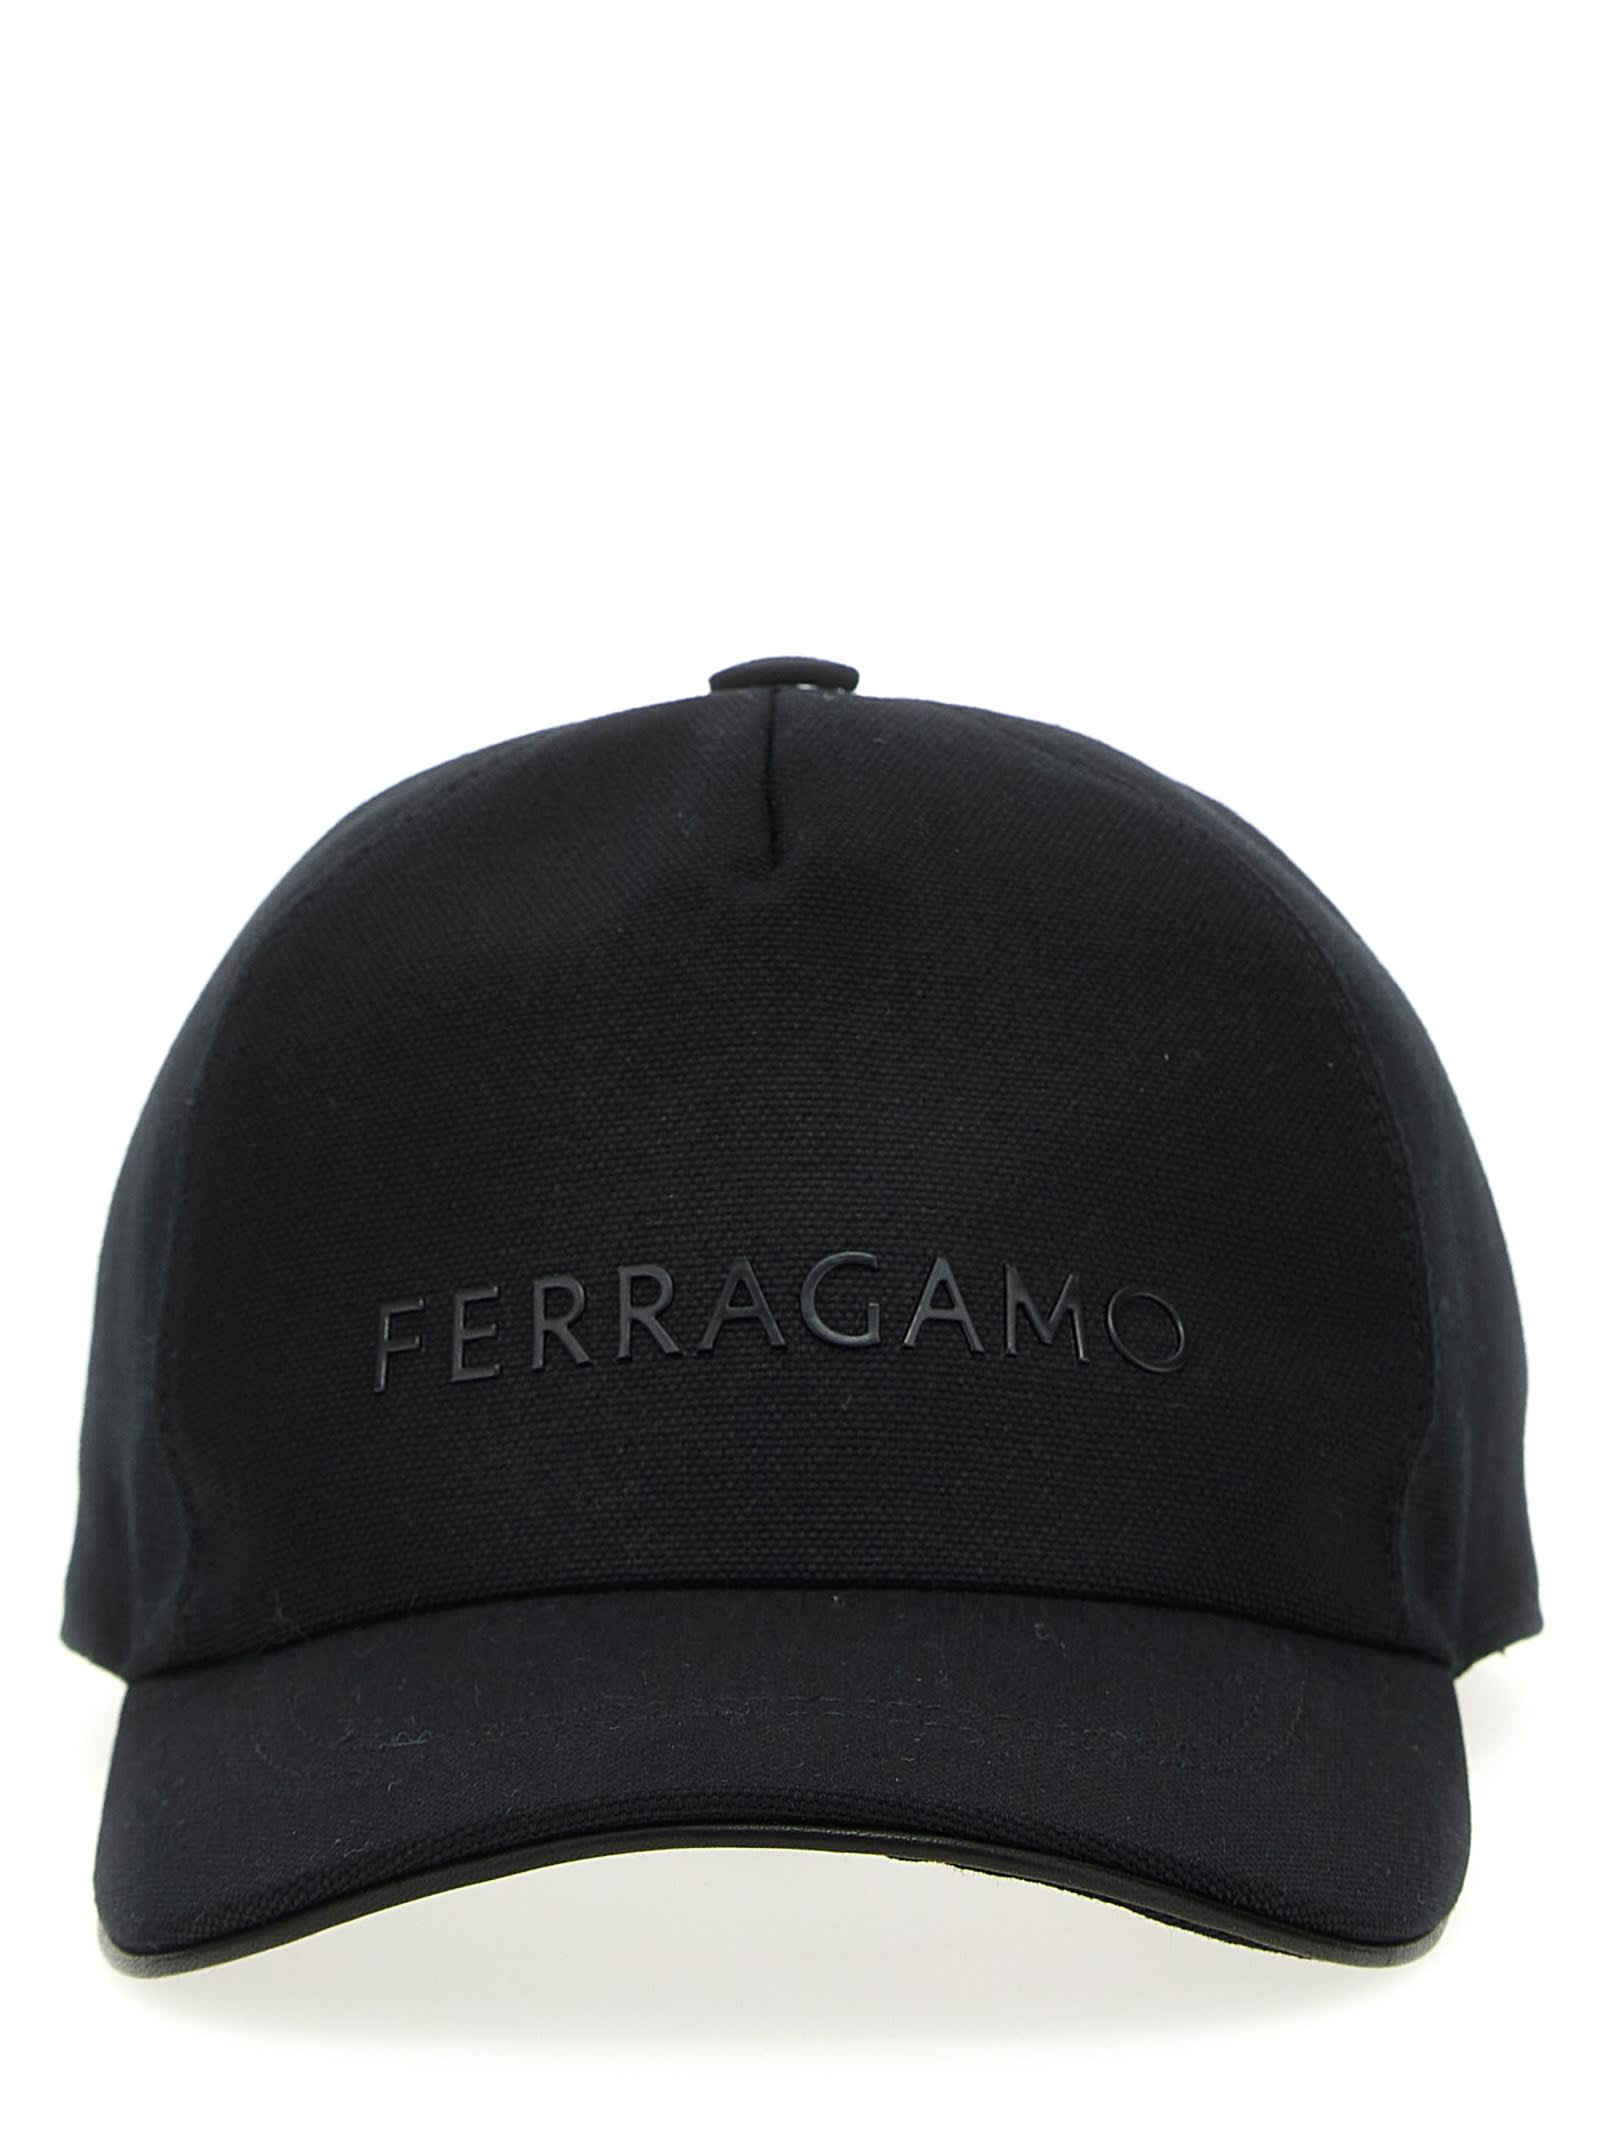 FERRAGAMO LOGO PRINTED CAP